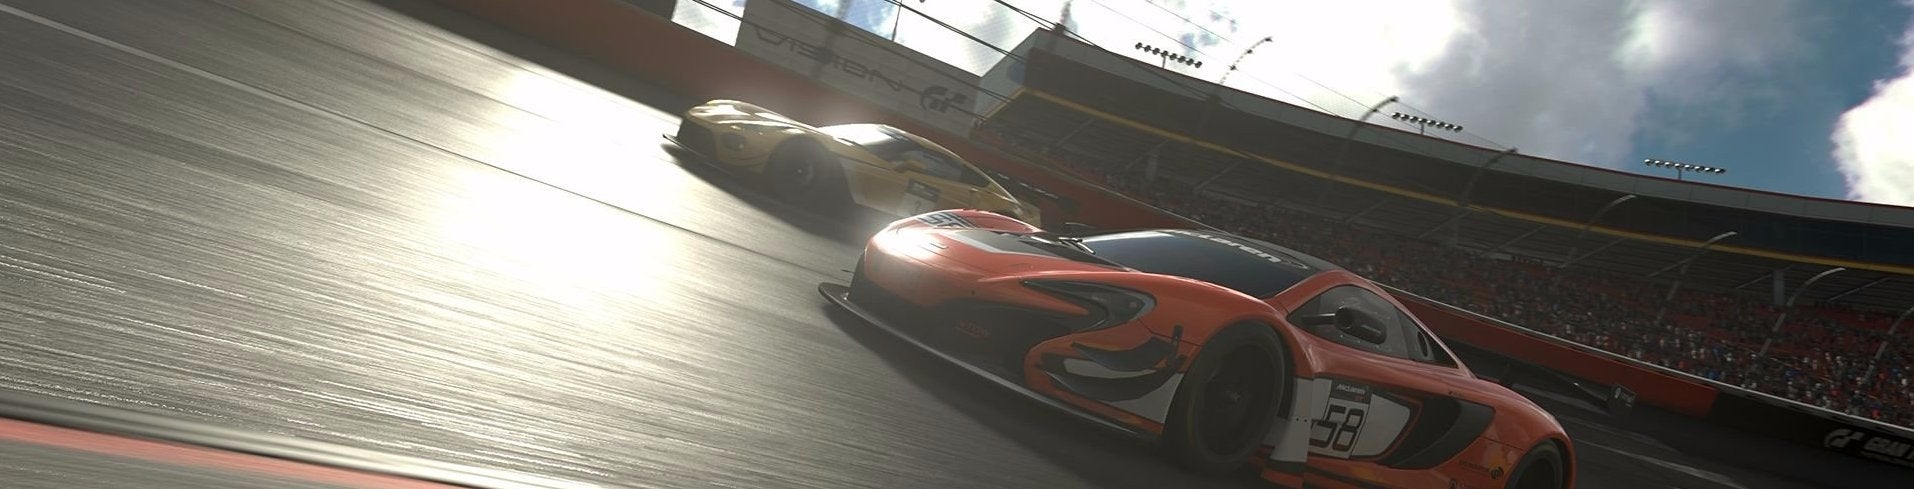 Afbeeldingen van Gran Turismo Sport - Release date, trailers, gameplay